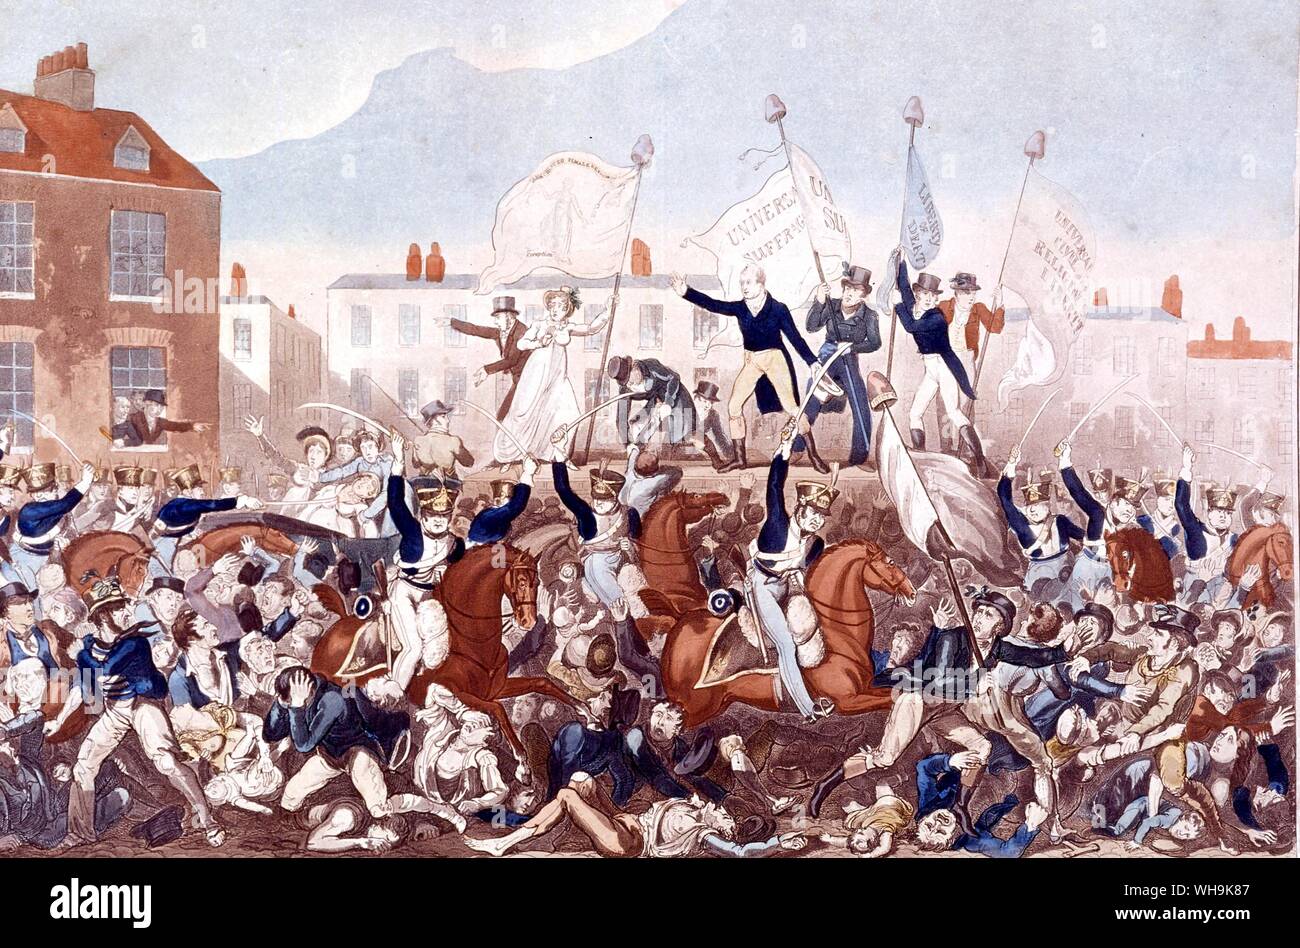 Die peterloo Massaker 1819 gewaltsame Aufbrechen einer Tagung über die Reform des Parlaments bei St. Peter Feld Manchester statt. Der Manchester Yeomanry aufgeladen in die Menge töten 11 Menschen Stockfoto